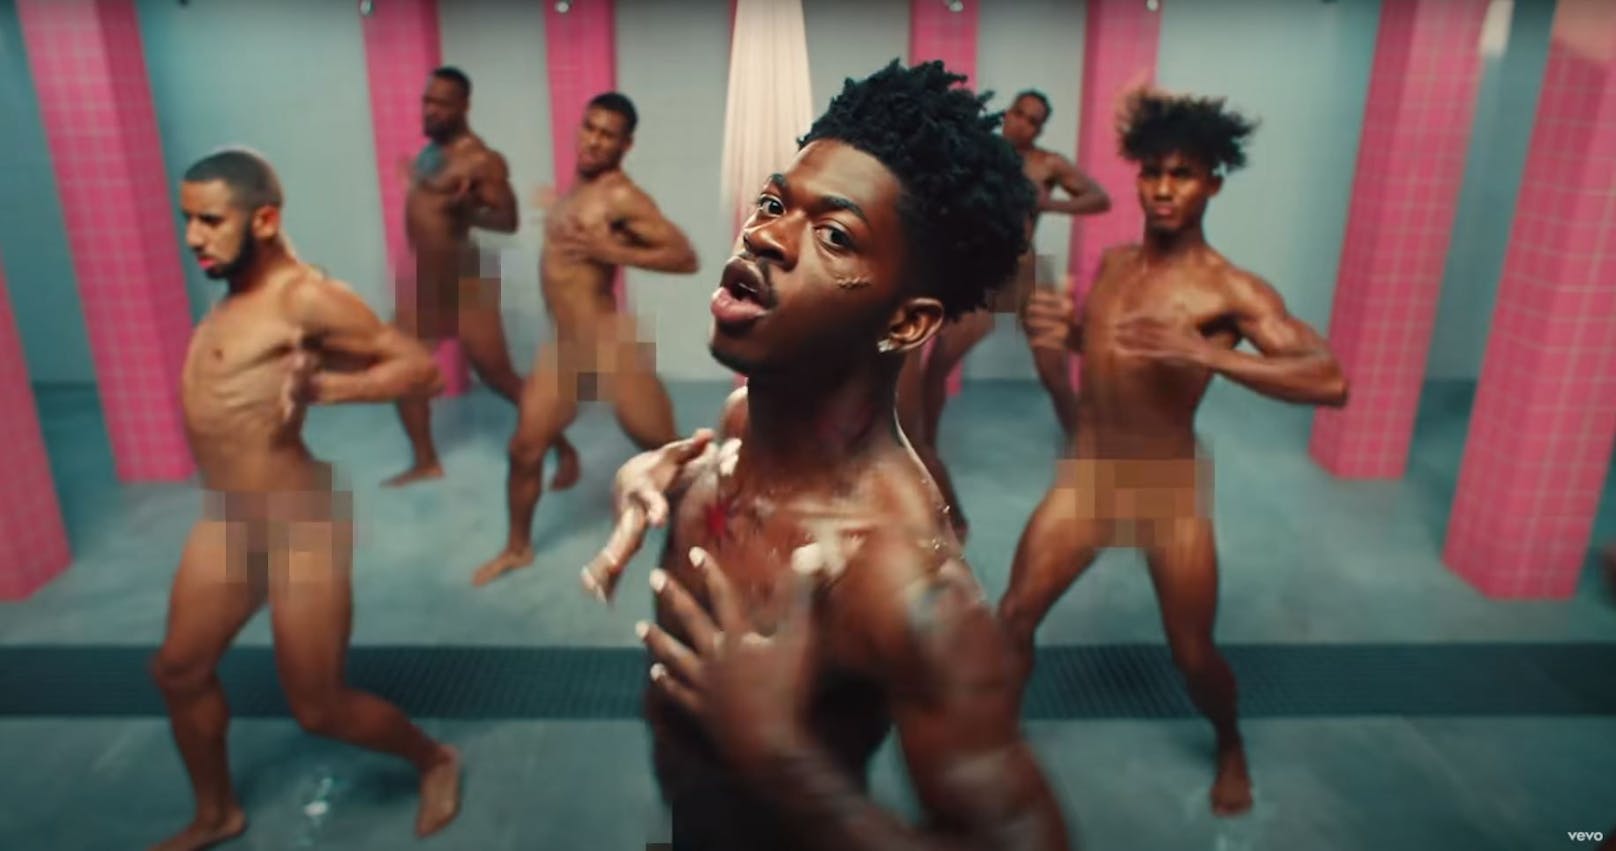 Auf viel Haut setzt der erfolgreiche Musiker aber auch gerne in seinen Musikvideos. Im Clip zu "Industry Baby" tanzt Lil Nas X sogar komplett nackt unter der Dusche.